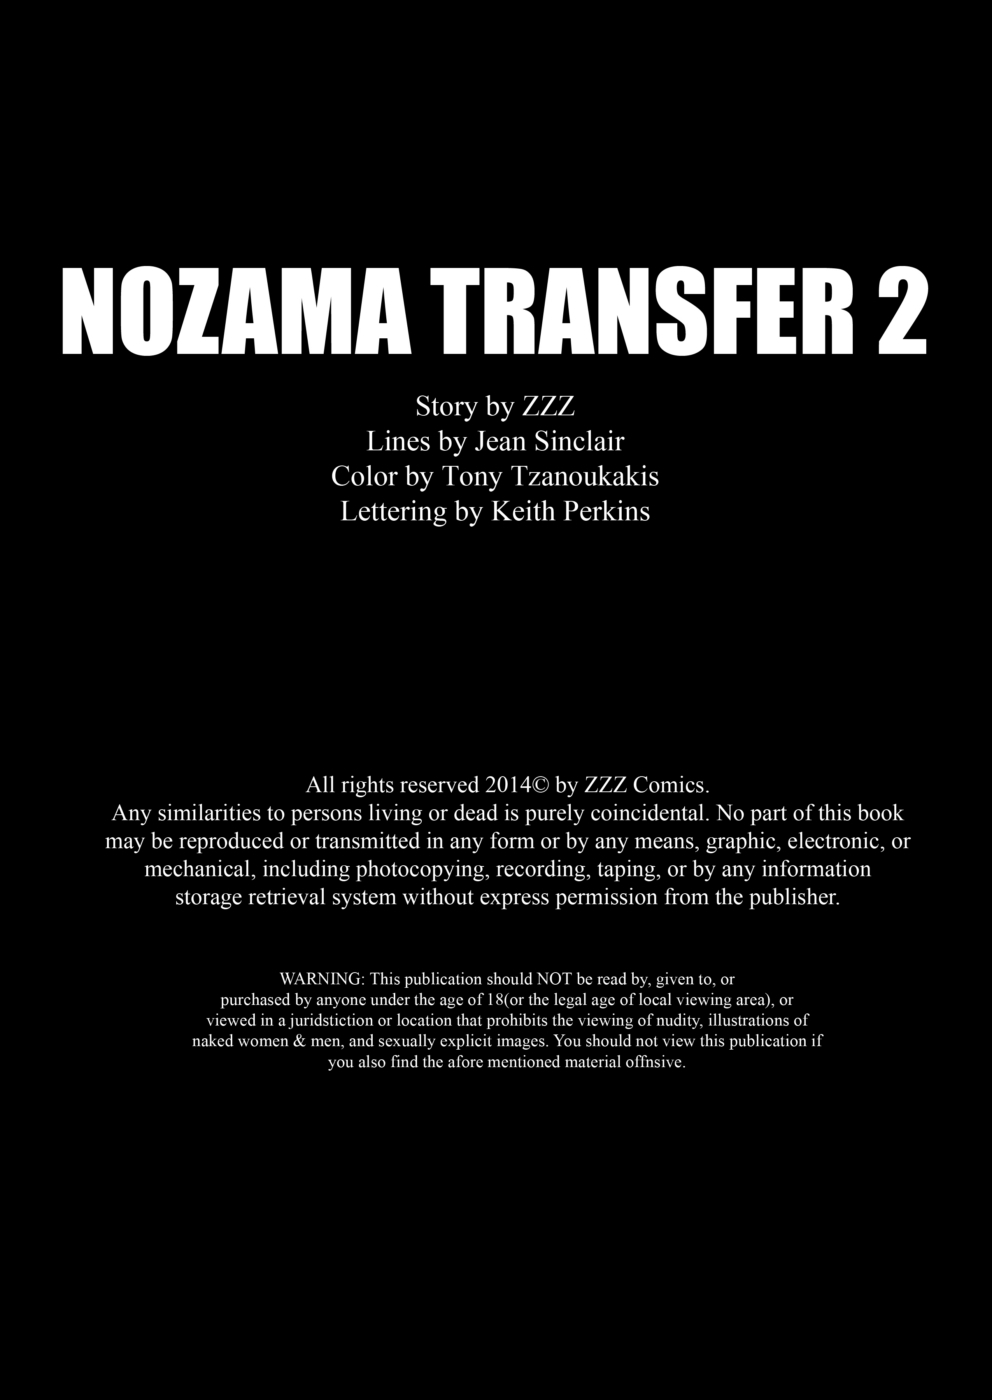 zzz nozama transfert 02